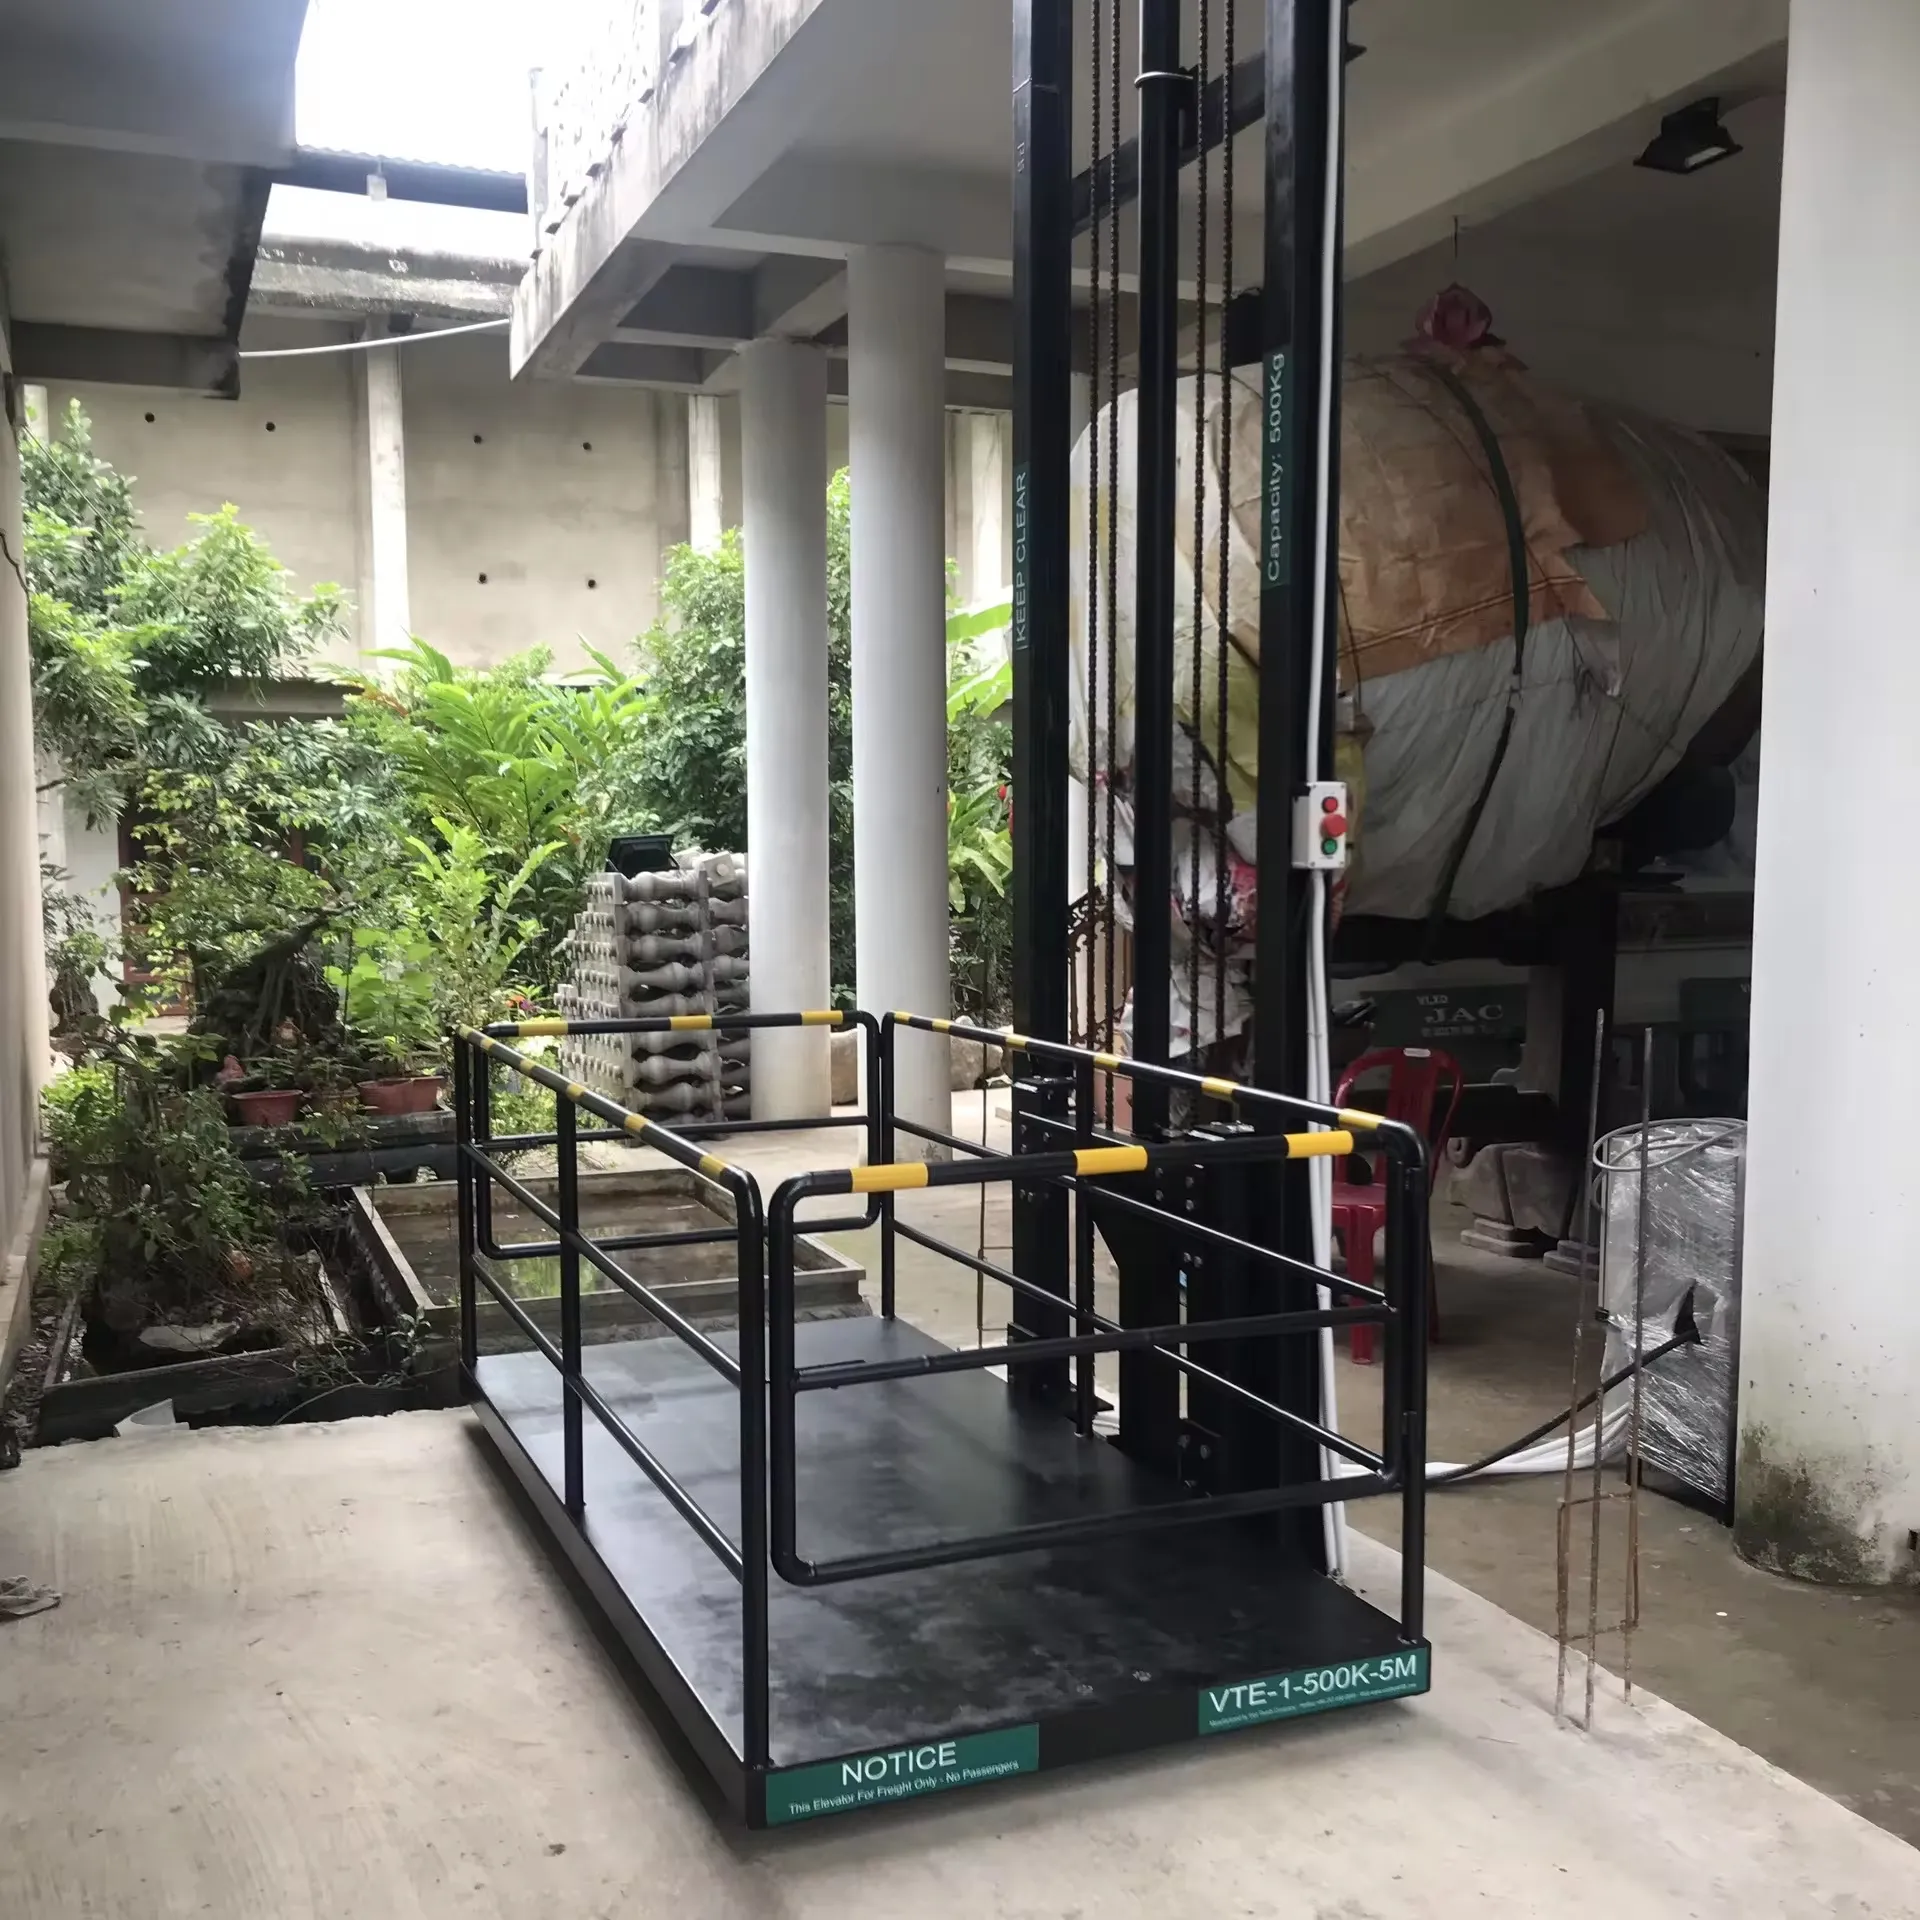 Miglior prezzo di esportazione 500kg 4M idraulico Cargo ascensore per magazzino guida verticale cargo Lift garanzia 1 anno di meccanica in Vietnam